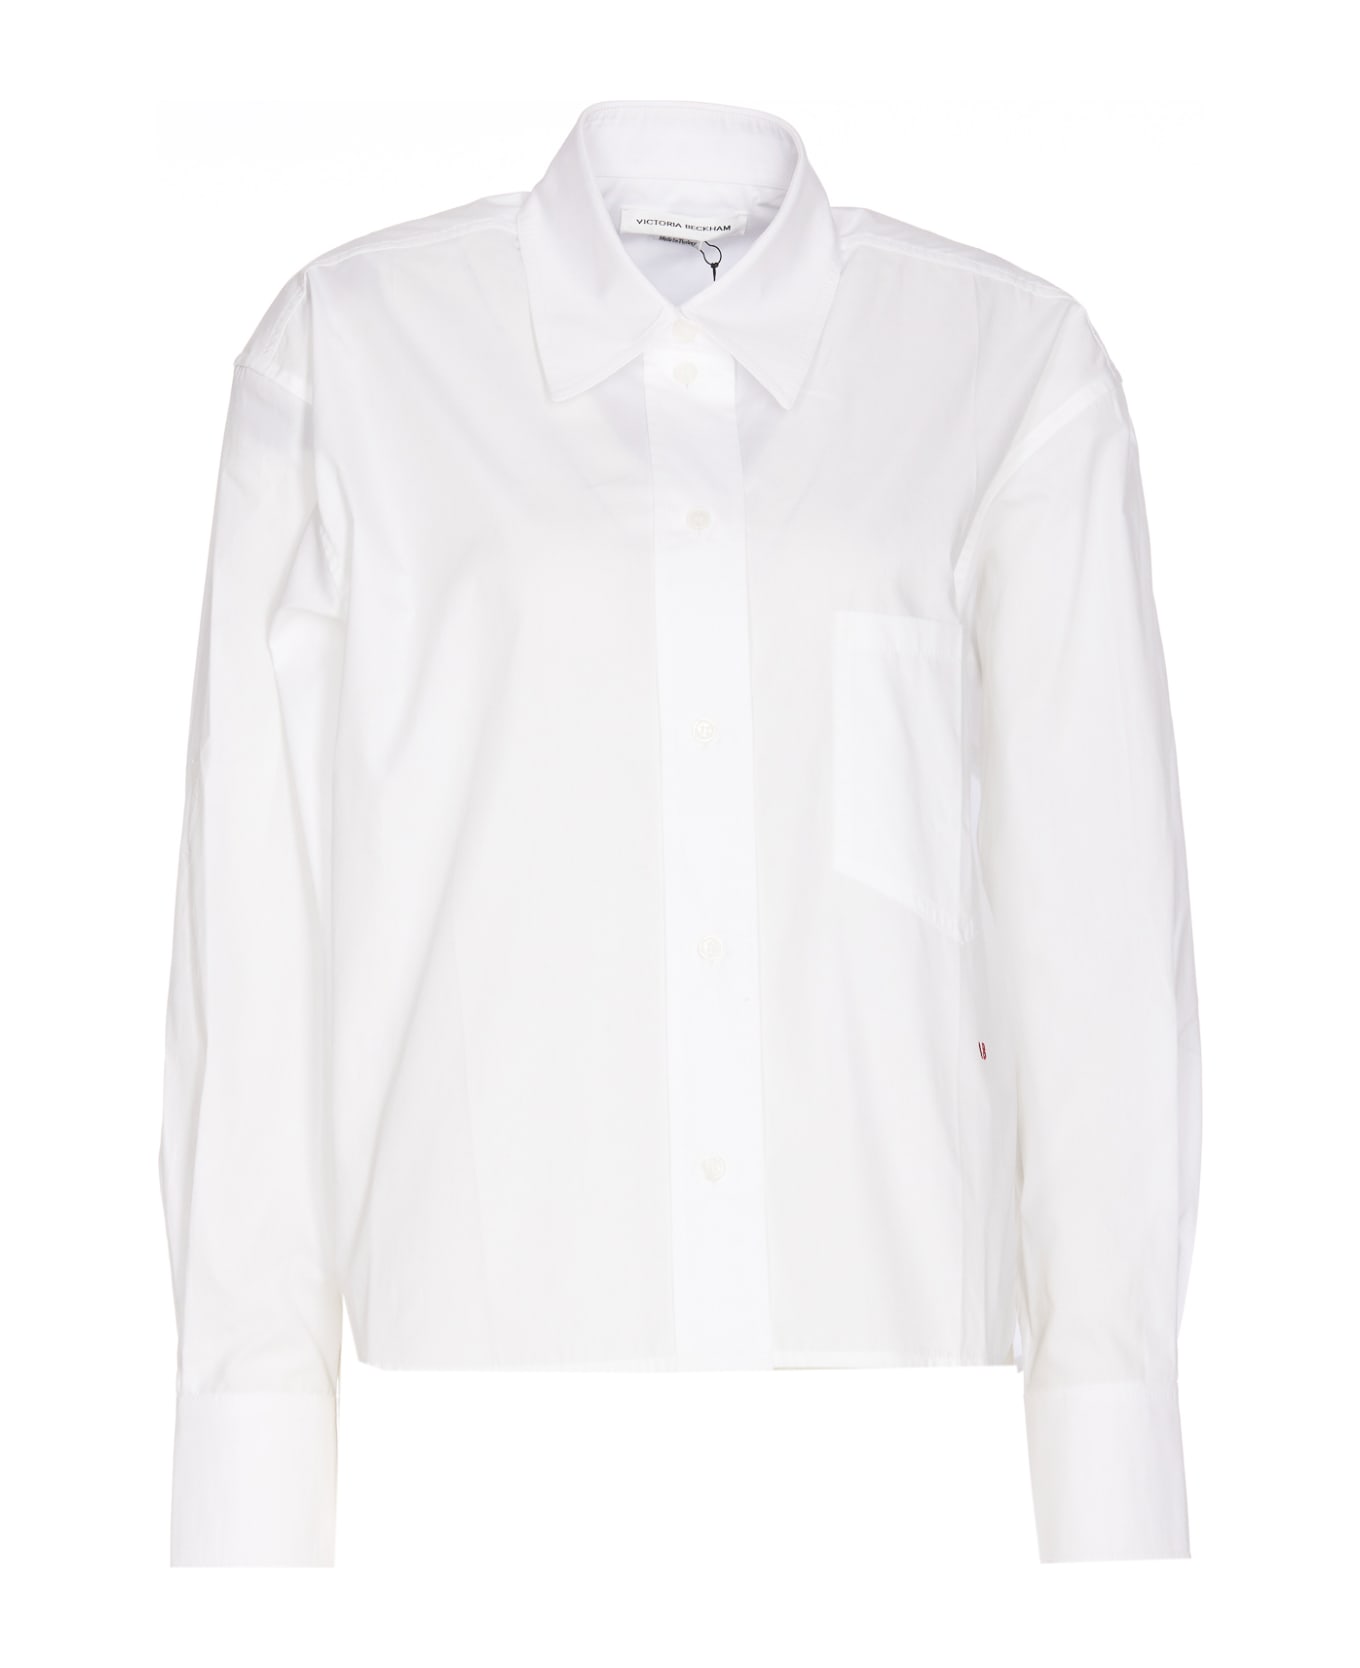 Victoria Beckham Shirt - White シャツ